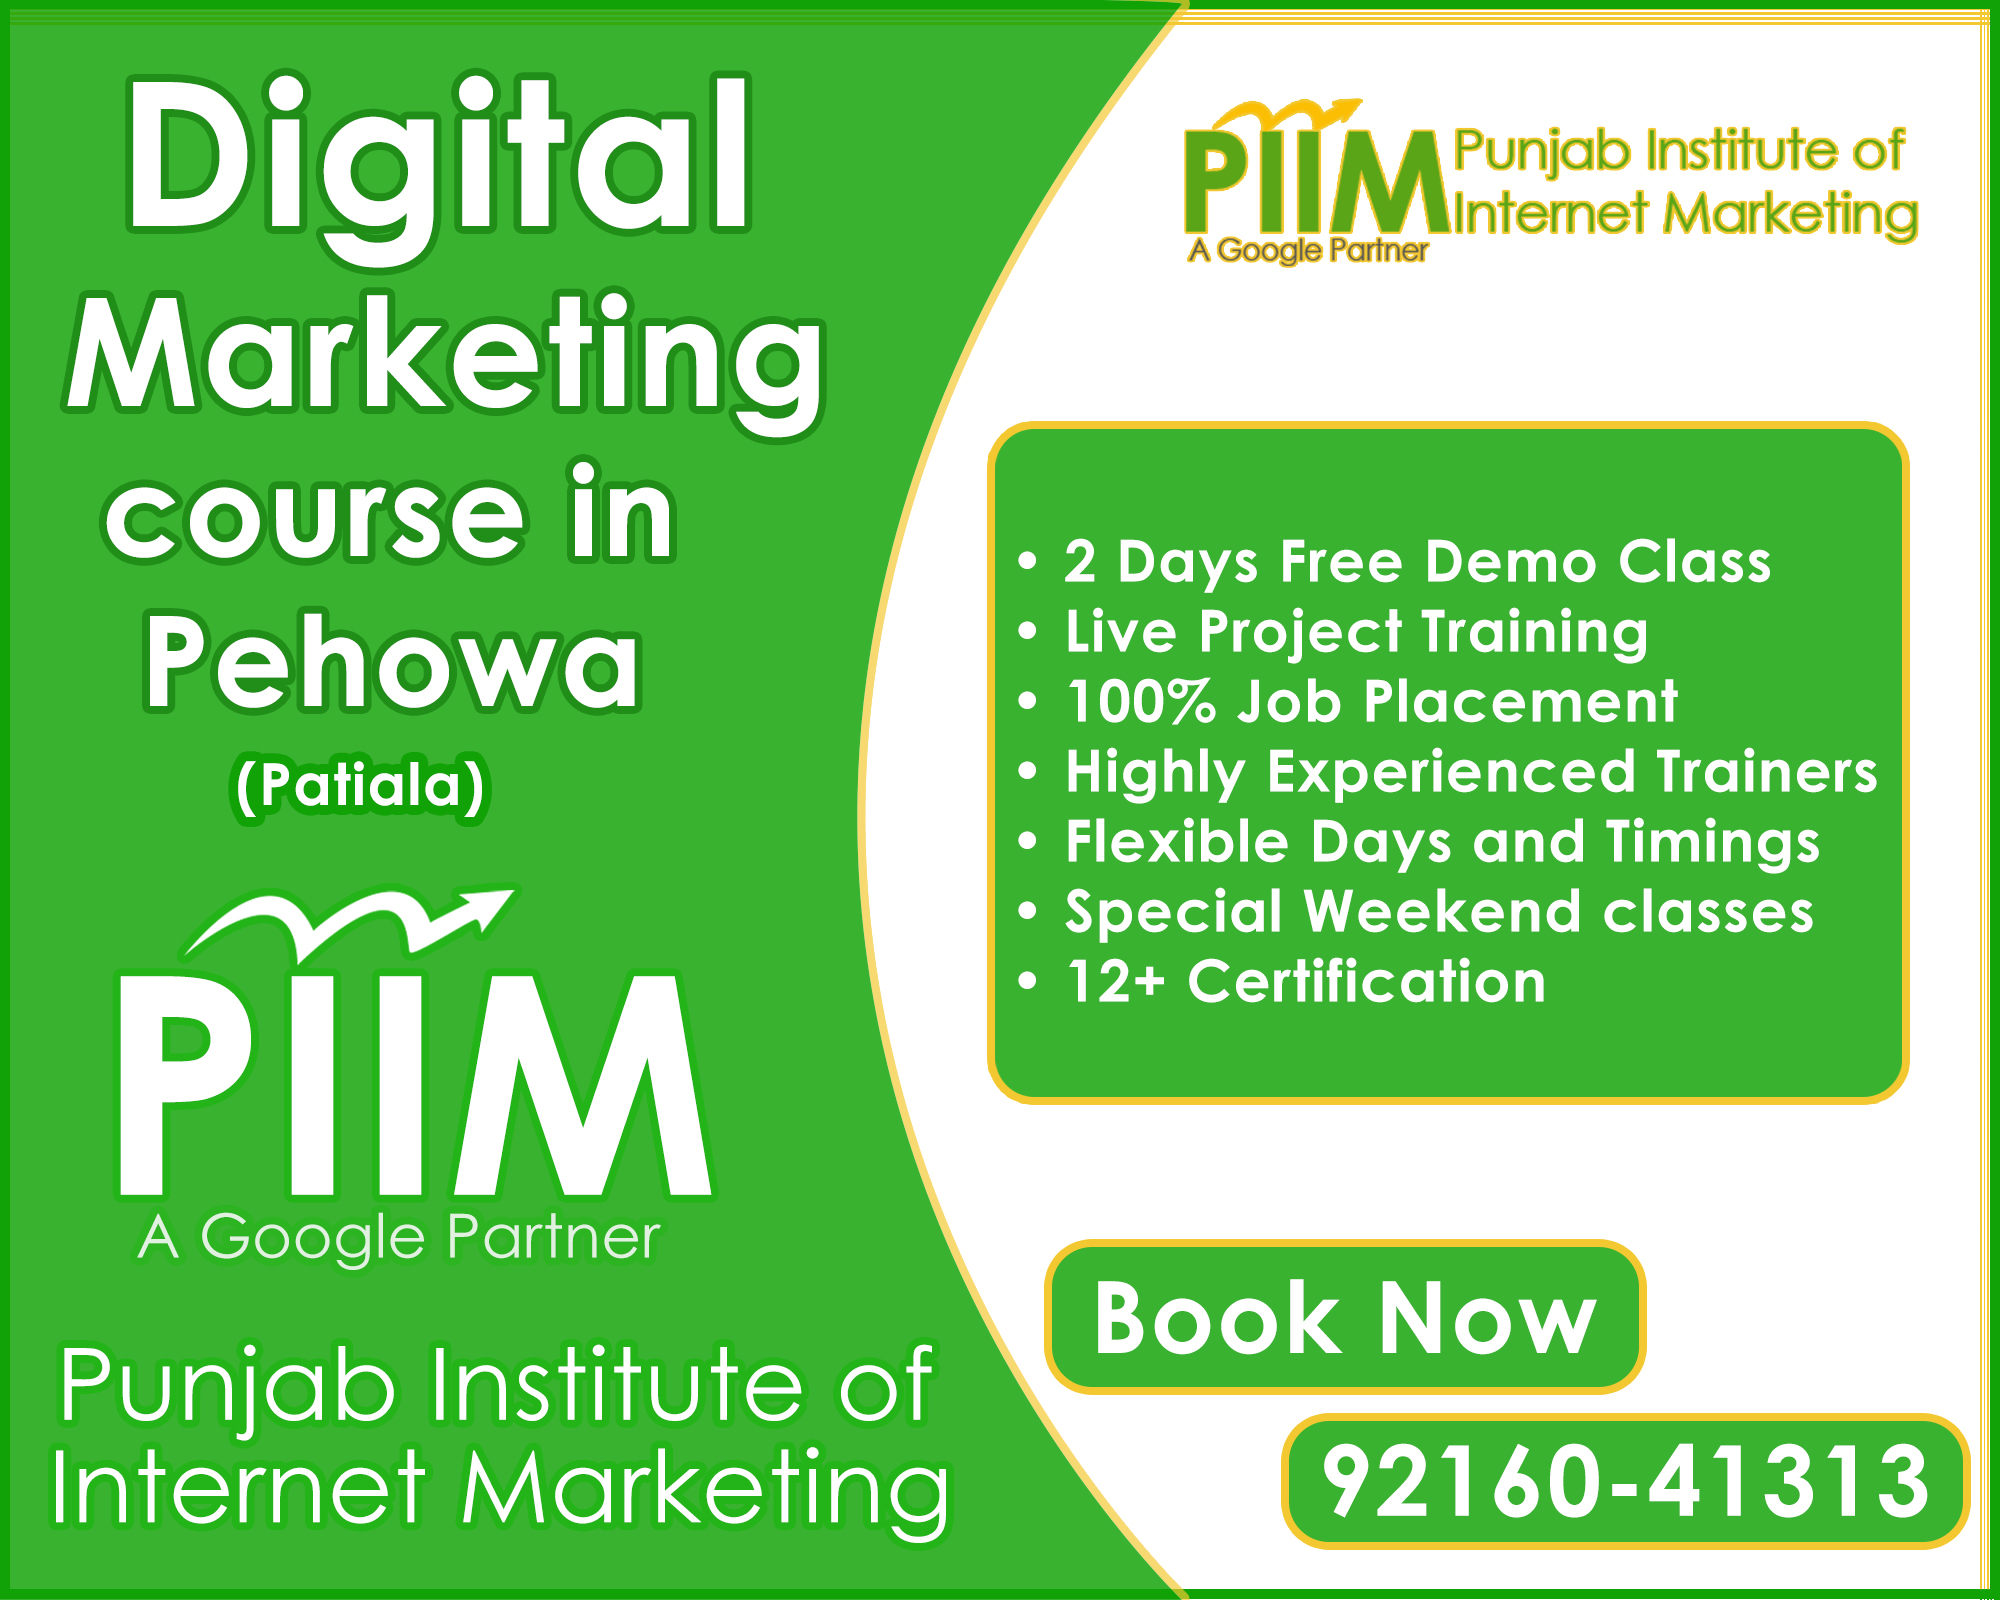 Digital Marketing Course in Pehowa